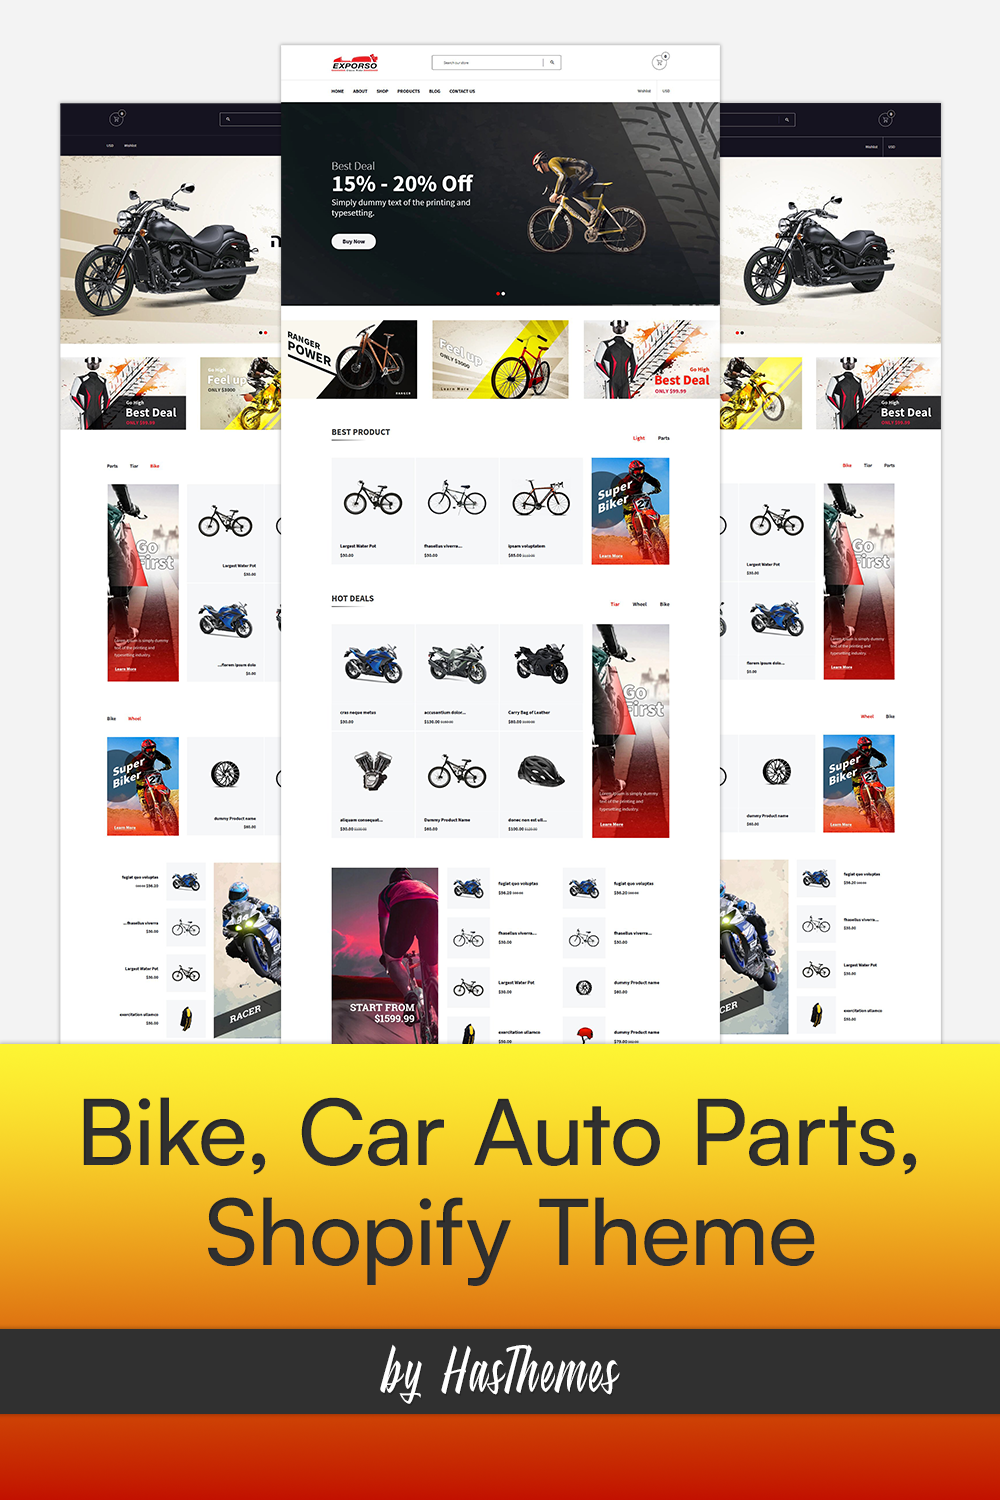 Bike car auto parts shopify theme images of pinterest.